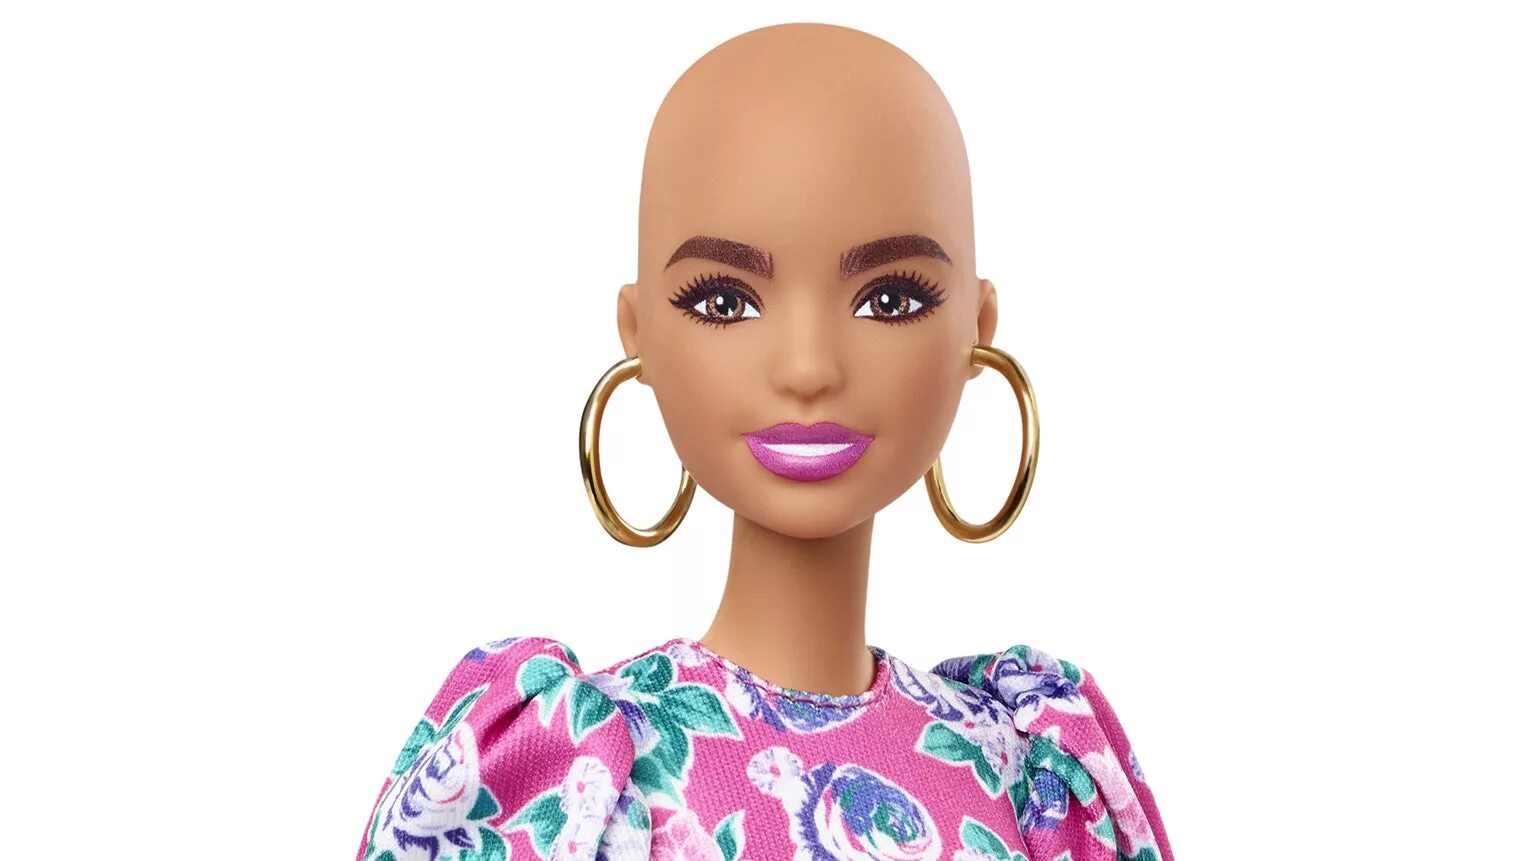 Барби фашионистас лысая. Mattel Barbie витилиго. Кукла Барби с витилиго. Барби фэшионистка лысая. Doll 2020